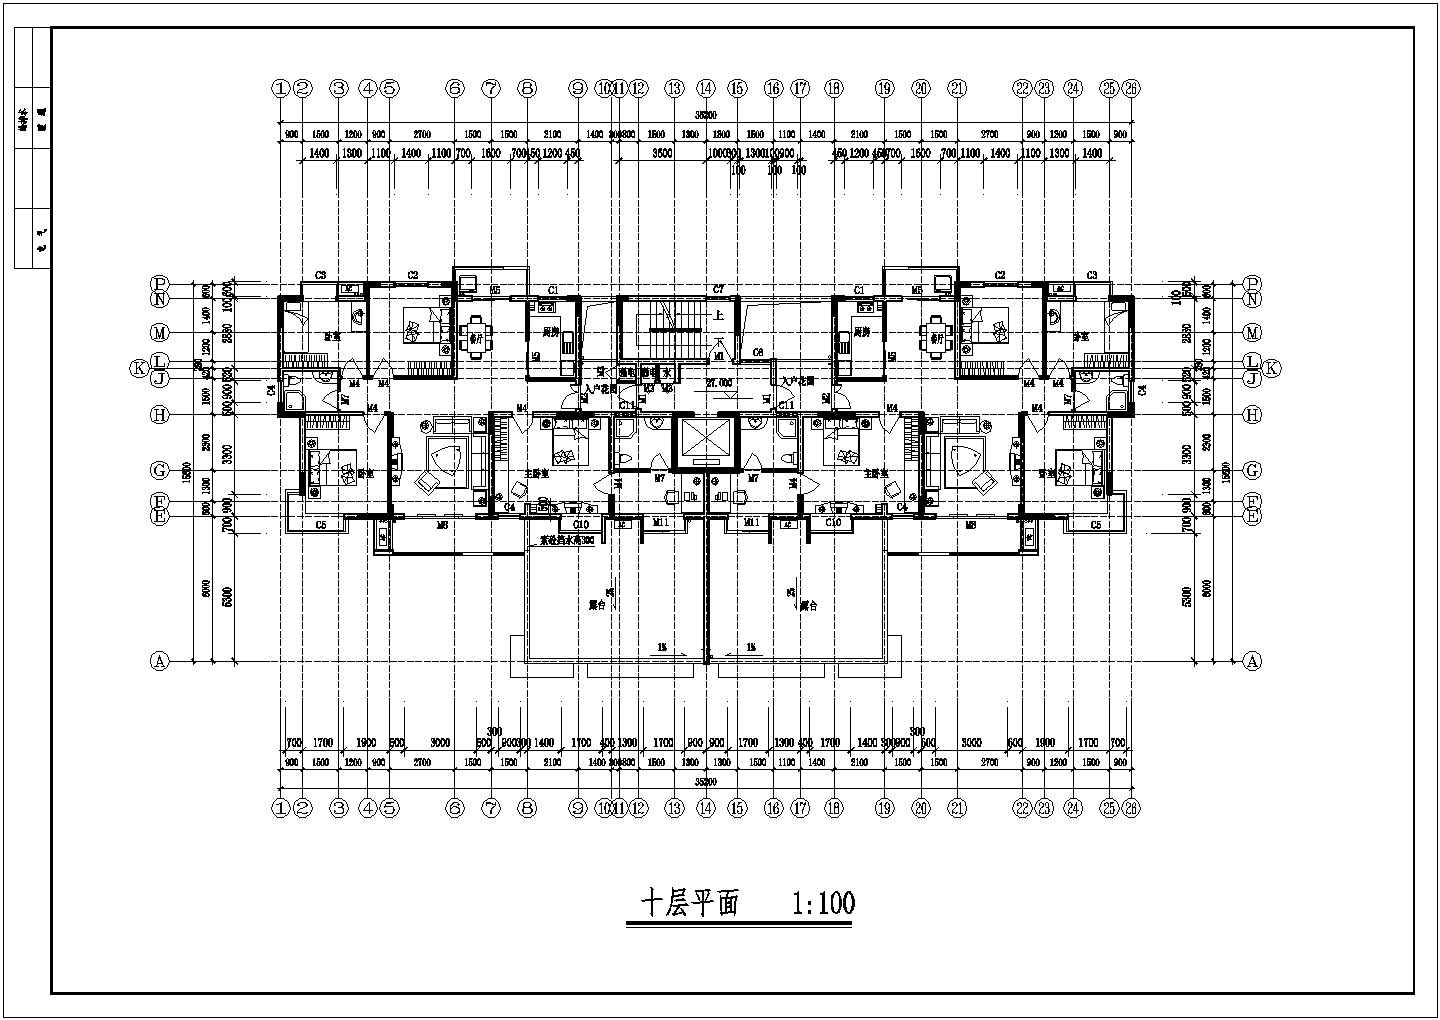 凤凰花园小区小高层洋房风格住宅楼建筑设计全套图